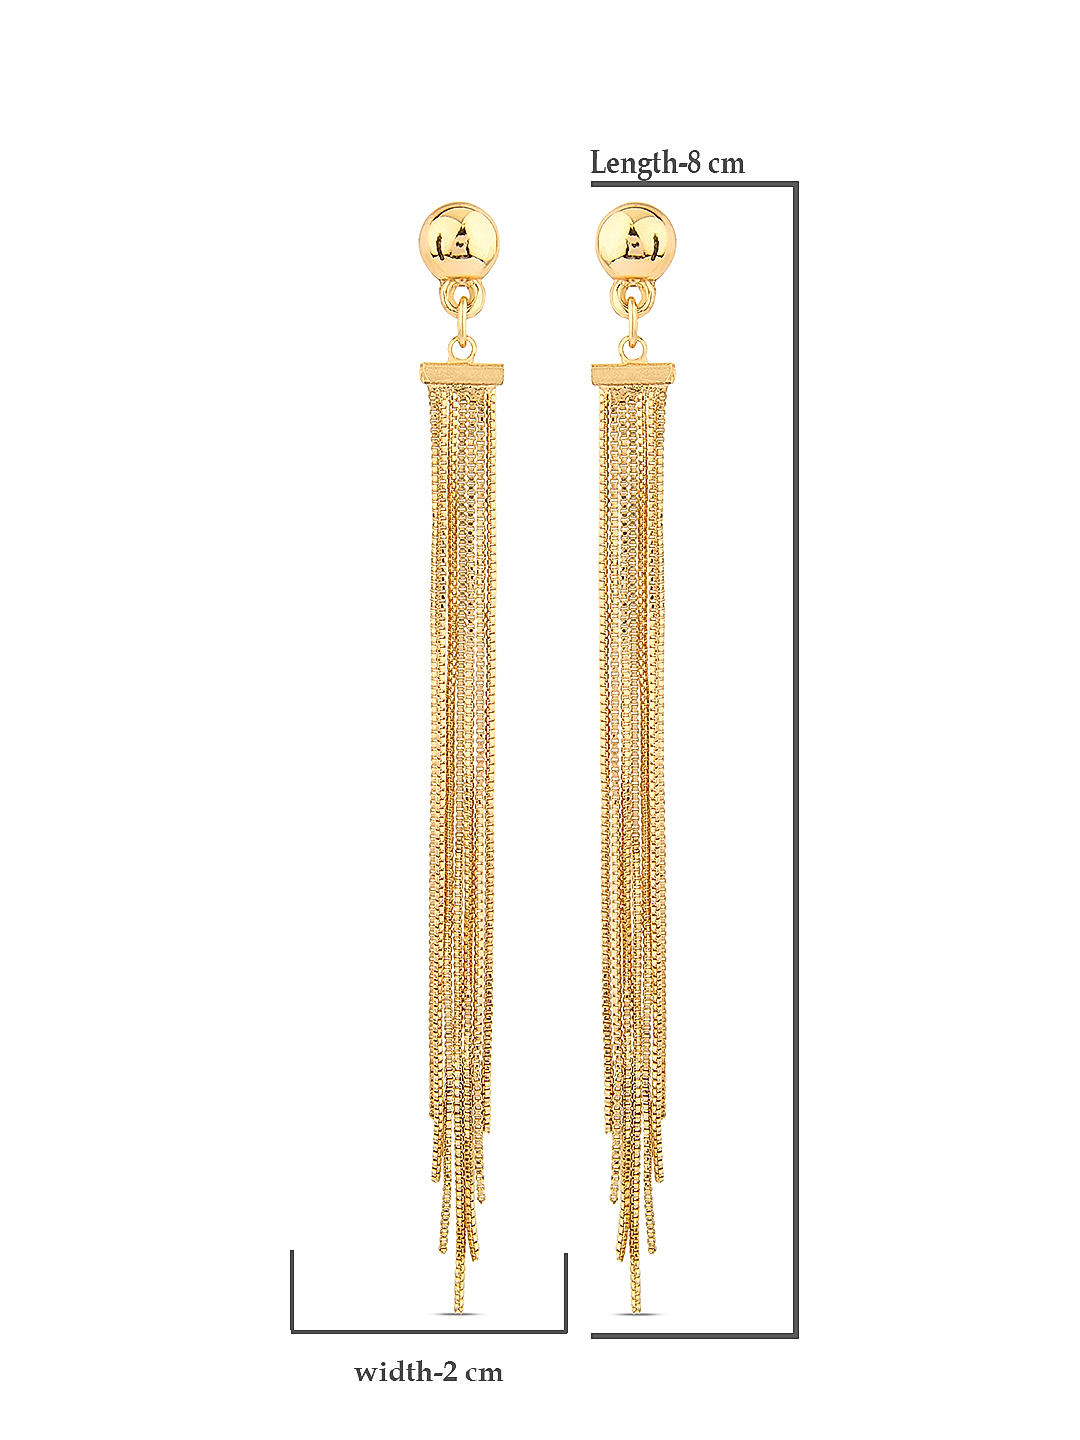 Buy OMTBEL STOOLY 14k Gold Earrings For Women Dangle Earrings Drop Thread  Dangling Earrings Minimalism Dipped Long Chain Earring (Gold) at Amazon.in